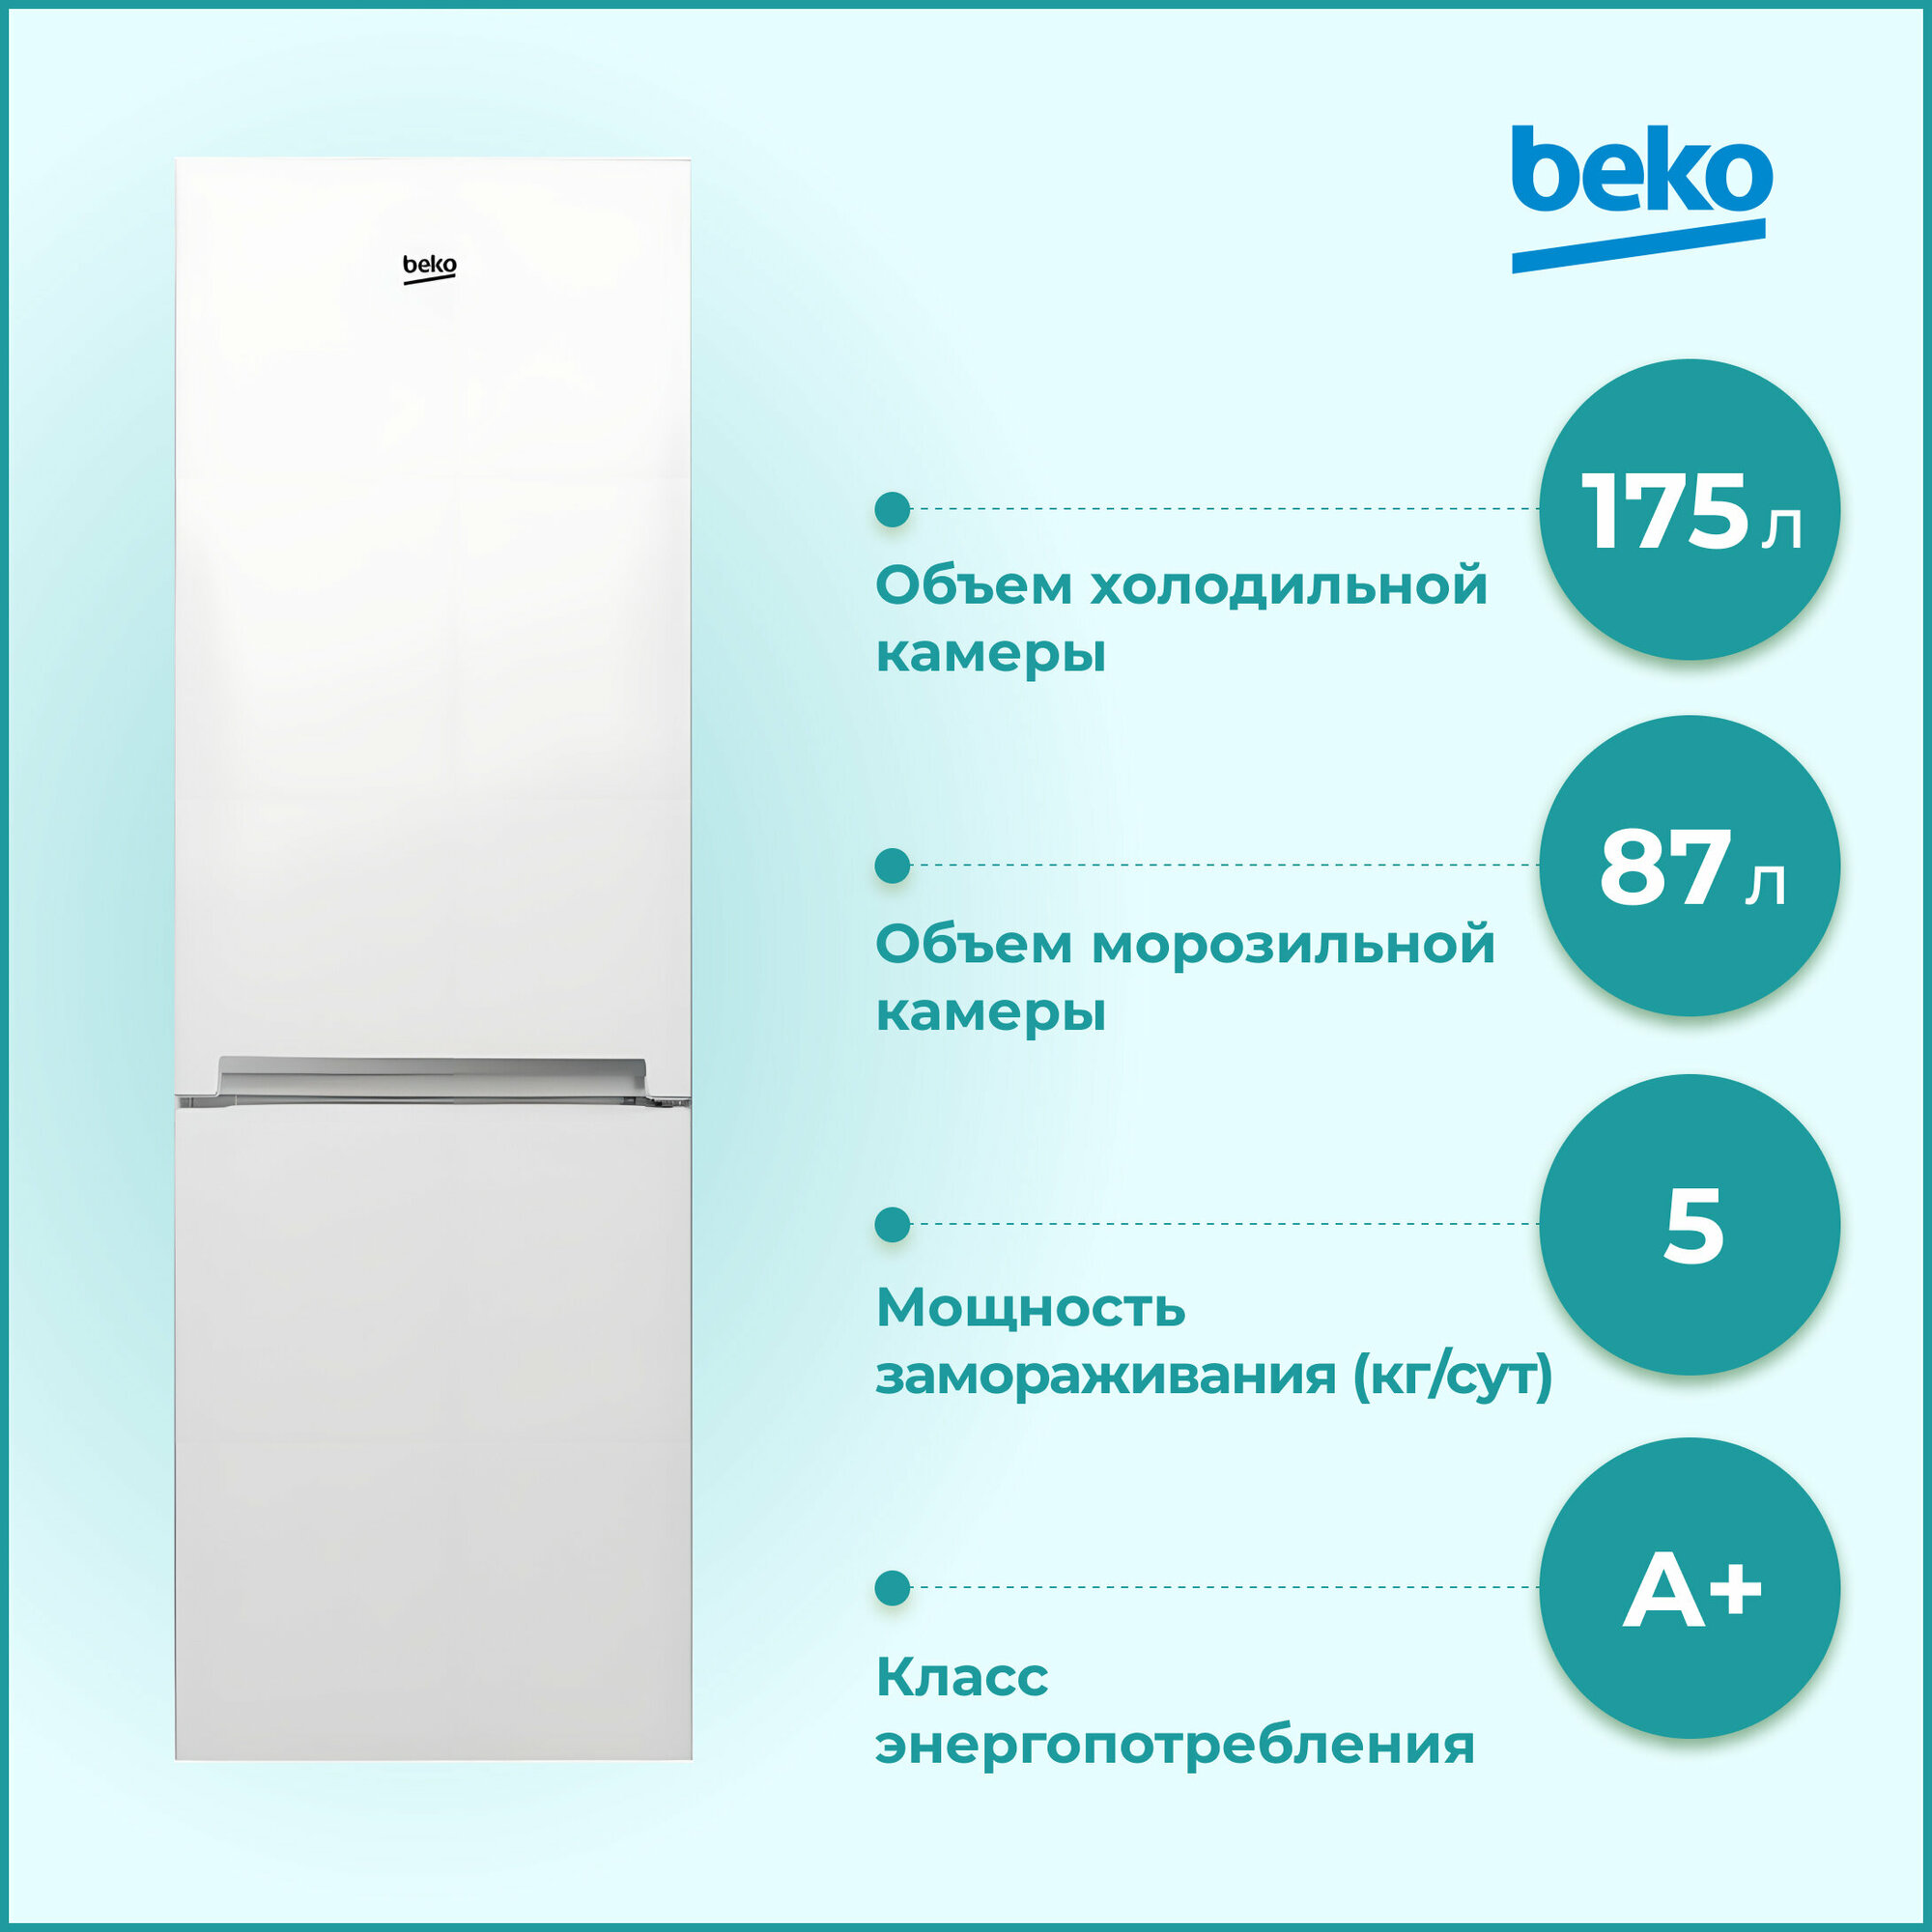 Холодильник Beko CSKDN6270M20W, белый